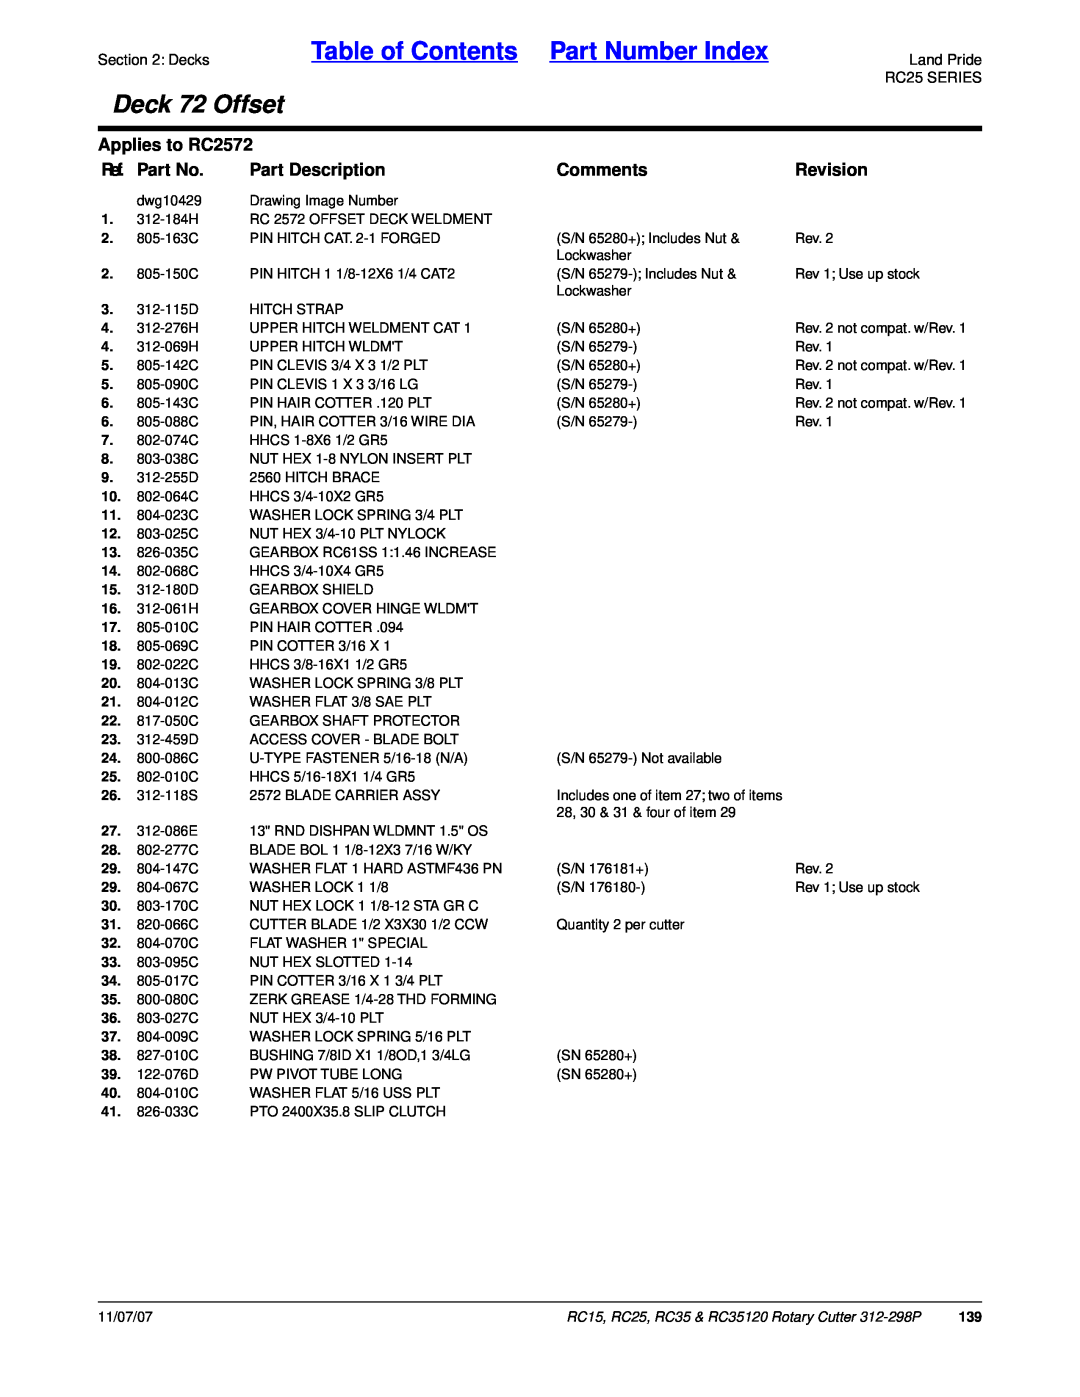 Land Pride RC15 Table of Contents Part Number Index, Deck 72 Offset, Applies to RC2572, Ref. Part No, Part Description 